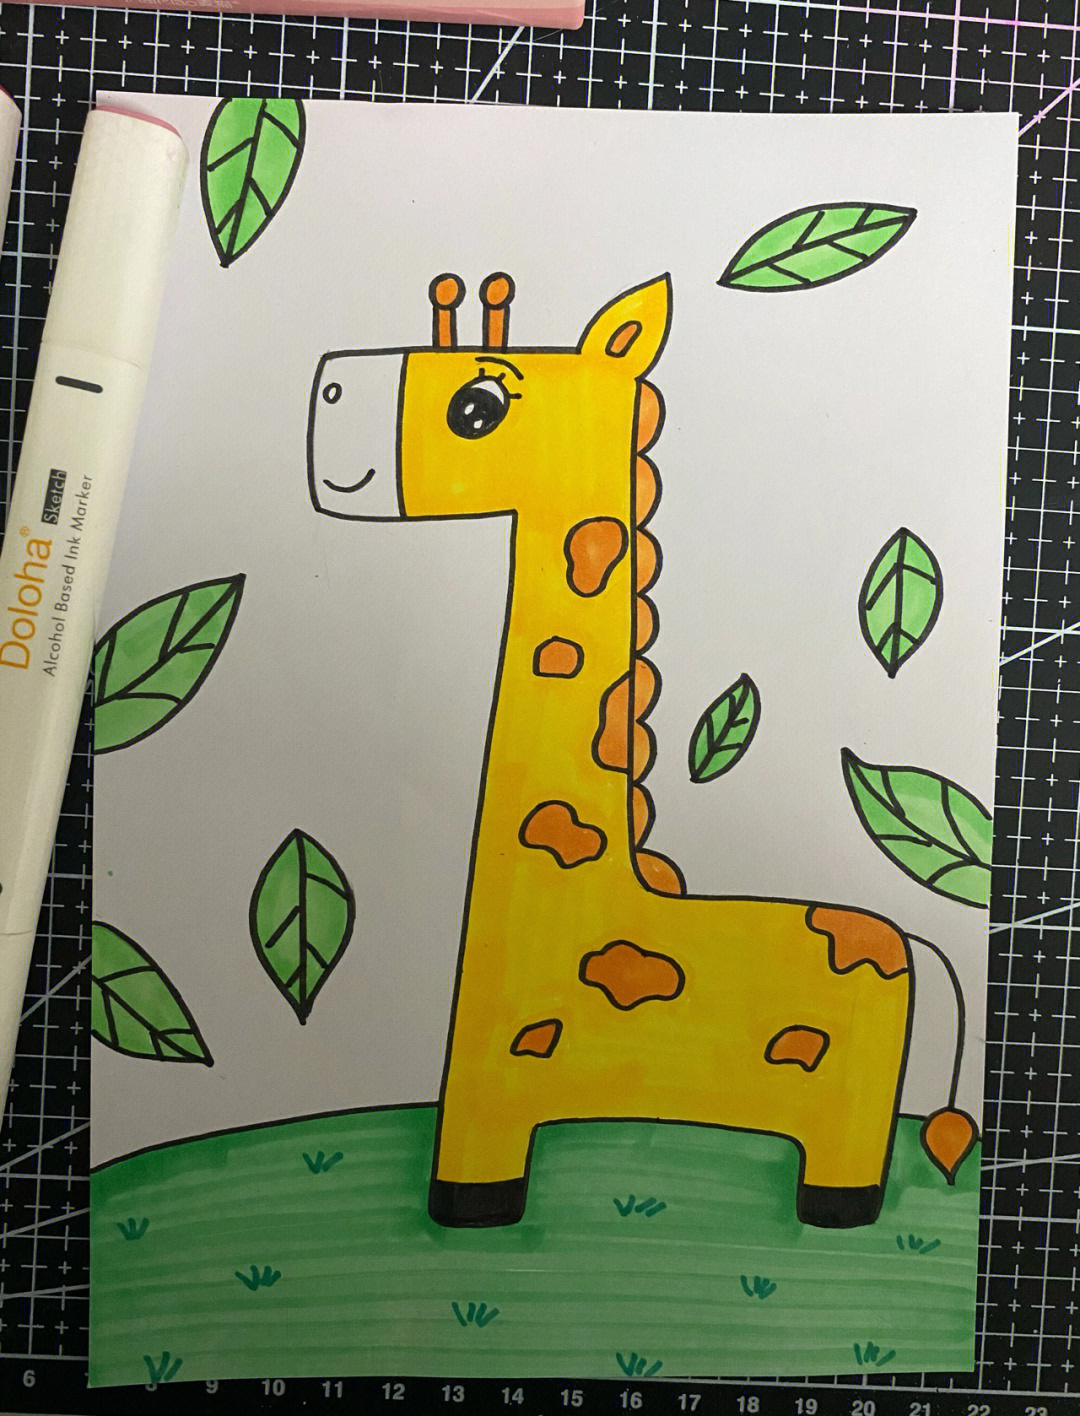 画一只简单的长颈鹿图片